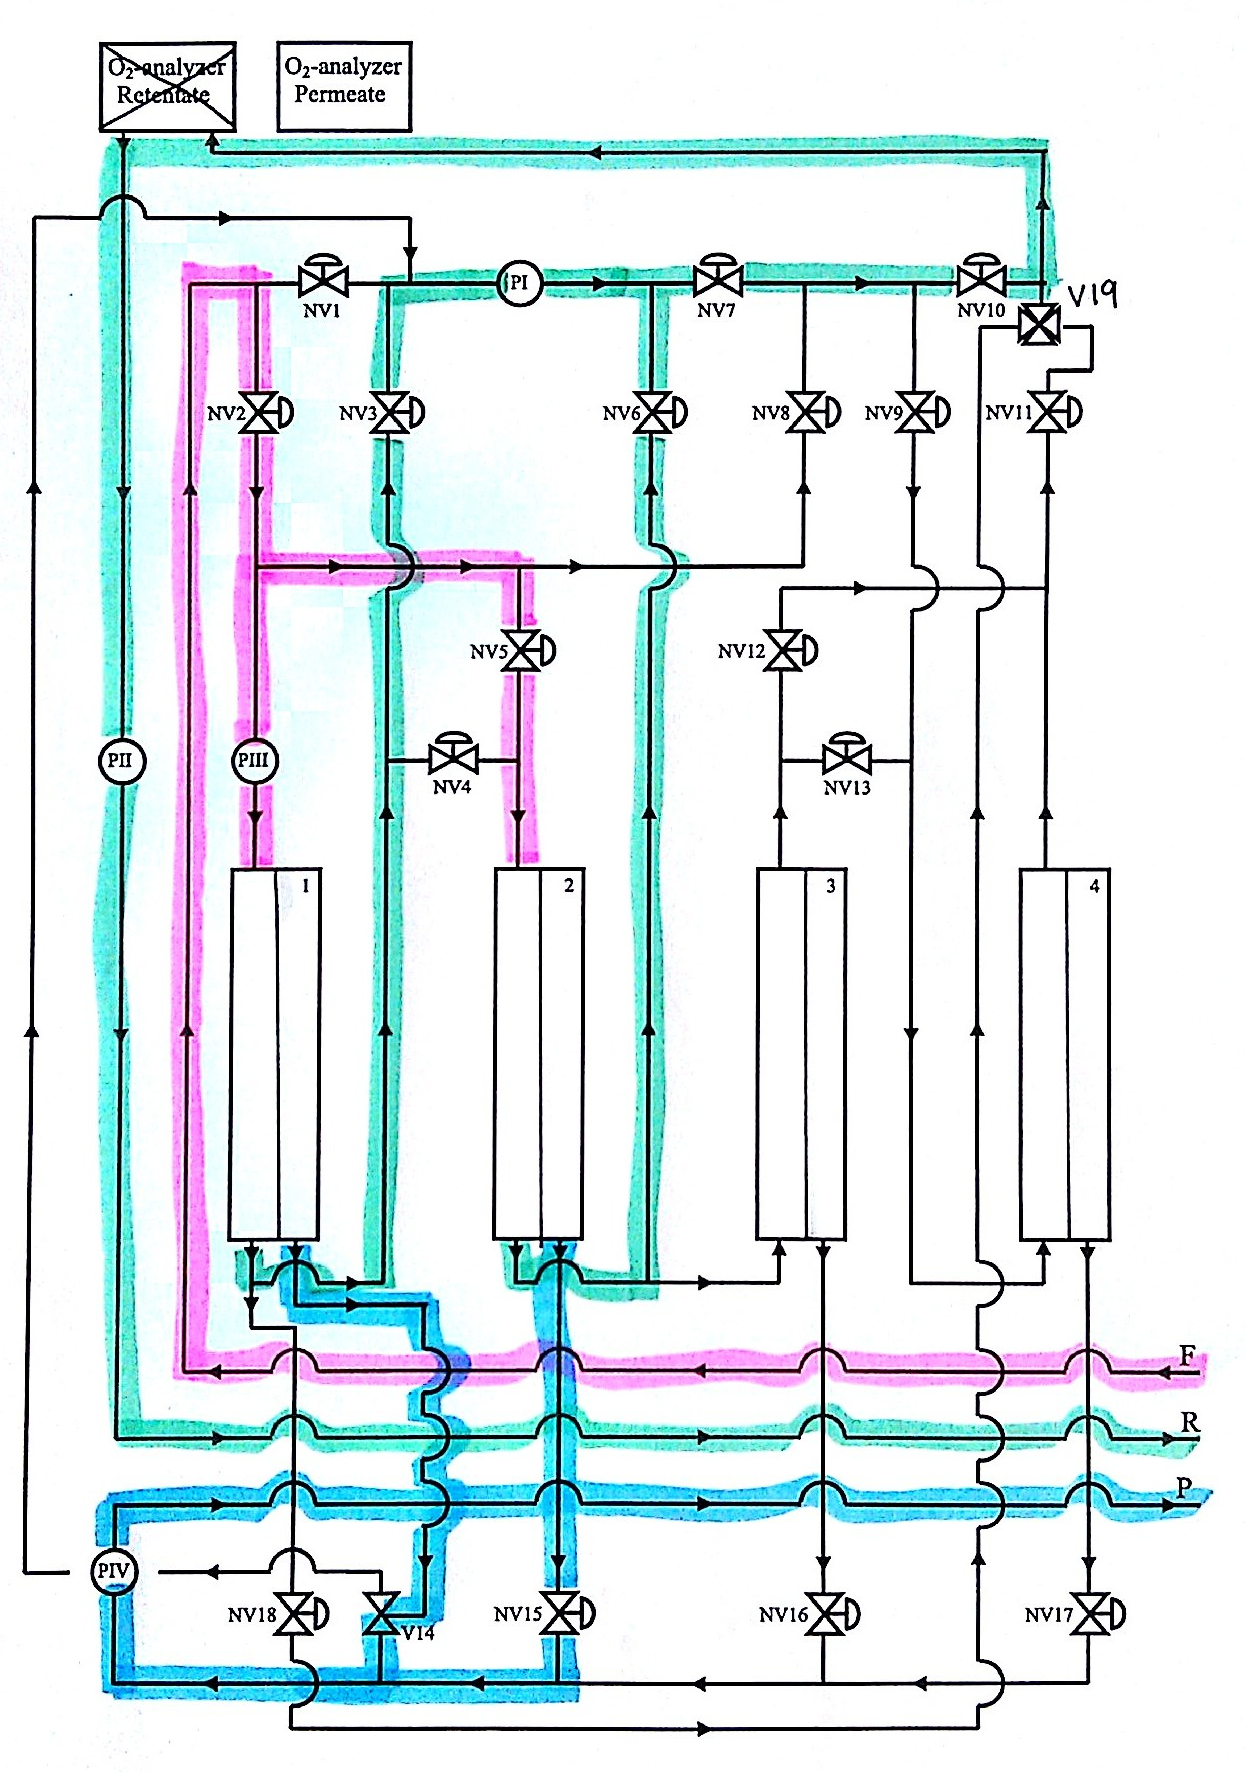 I Figur C.2 er flytskjema for konfigurasjon 2 vist. Figur C.2: Flytskjema for konfigurasjon 2, som består av to moduler i parallell.